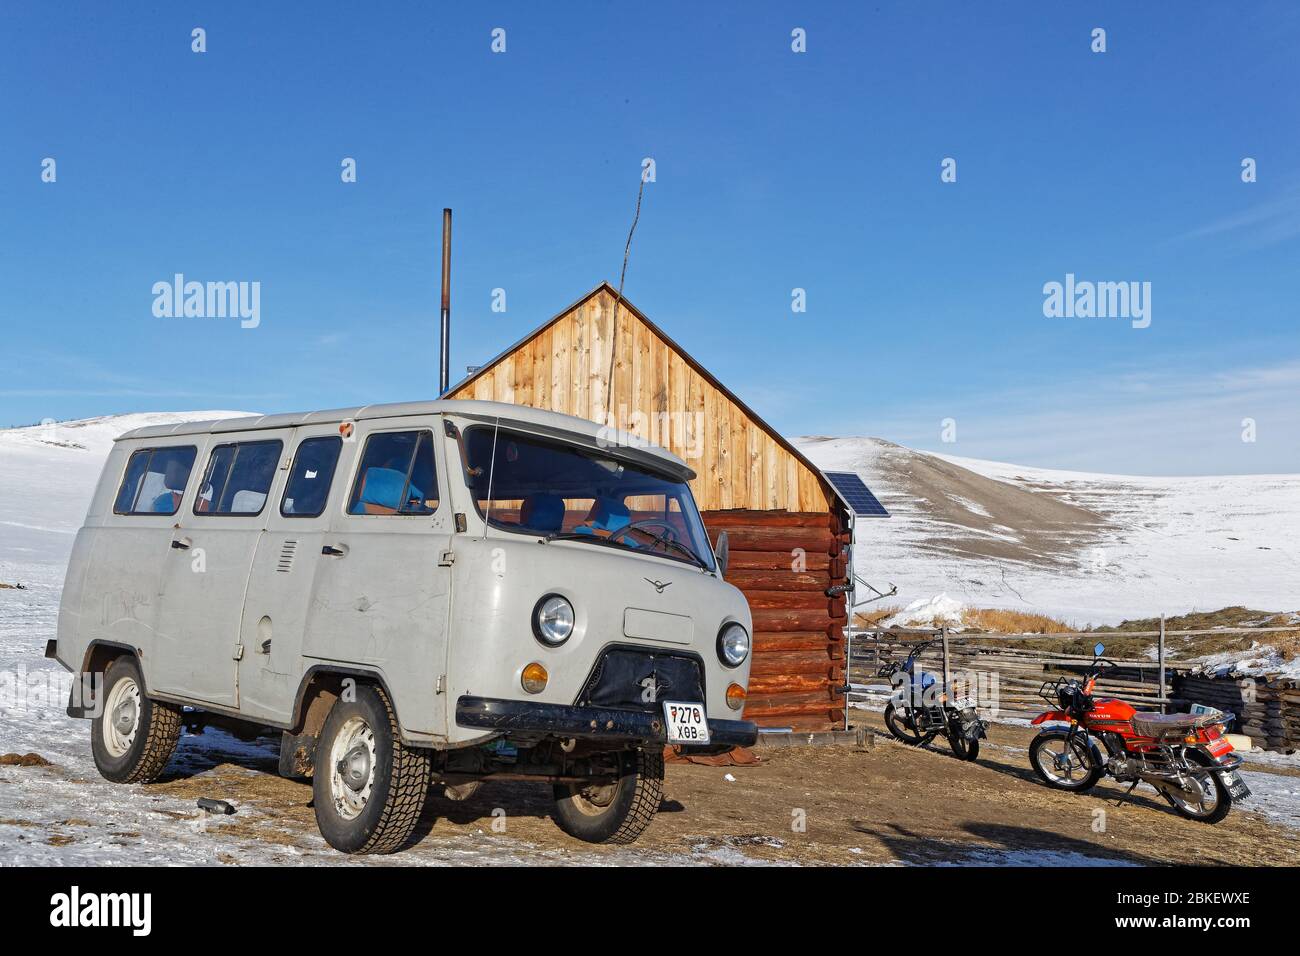 RENCHINLKHUMBE, MONGOLIA, 4 marzo 2020 : veicolo di Uaz e biciclette intorno ad una casa di legno nelle steppe desolate. Foto Stock